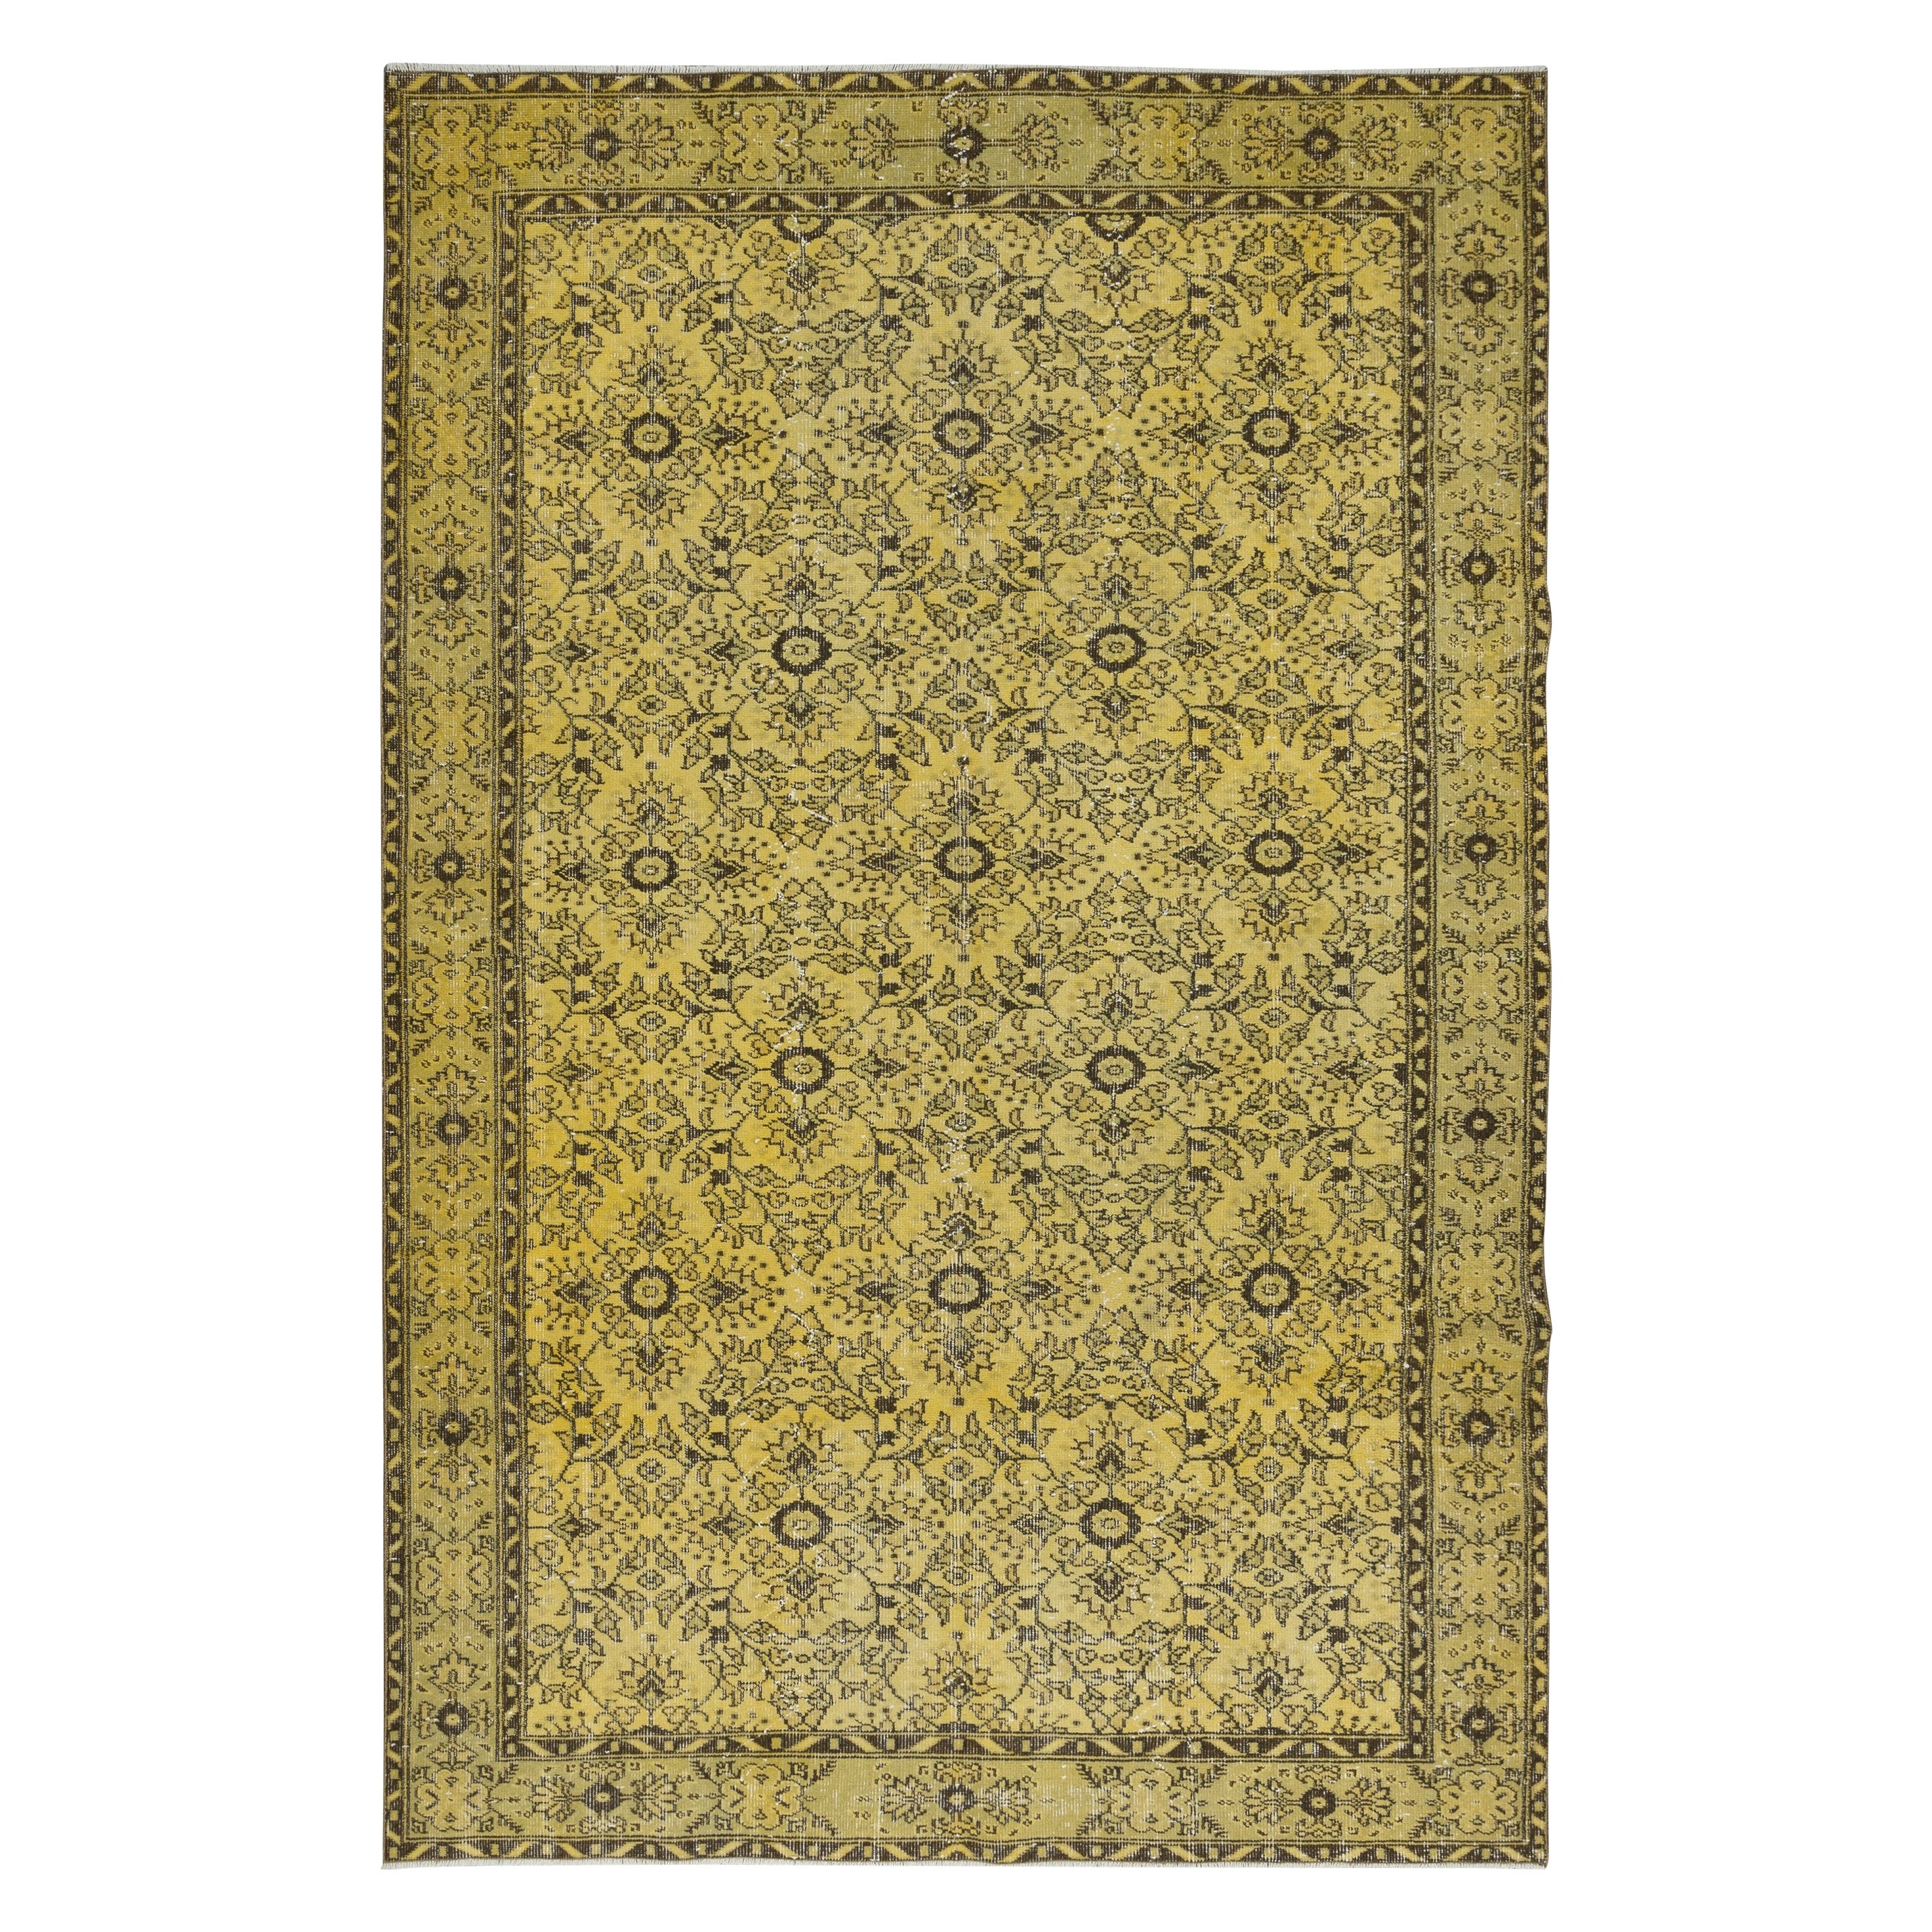 6.6x9.7 Ft Upcycelter gelber moderner türkischer Teppich, floraler handgefertigter Teppich